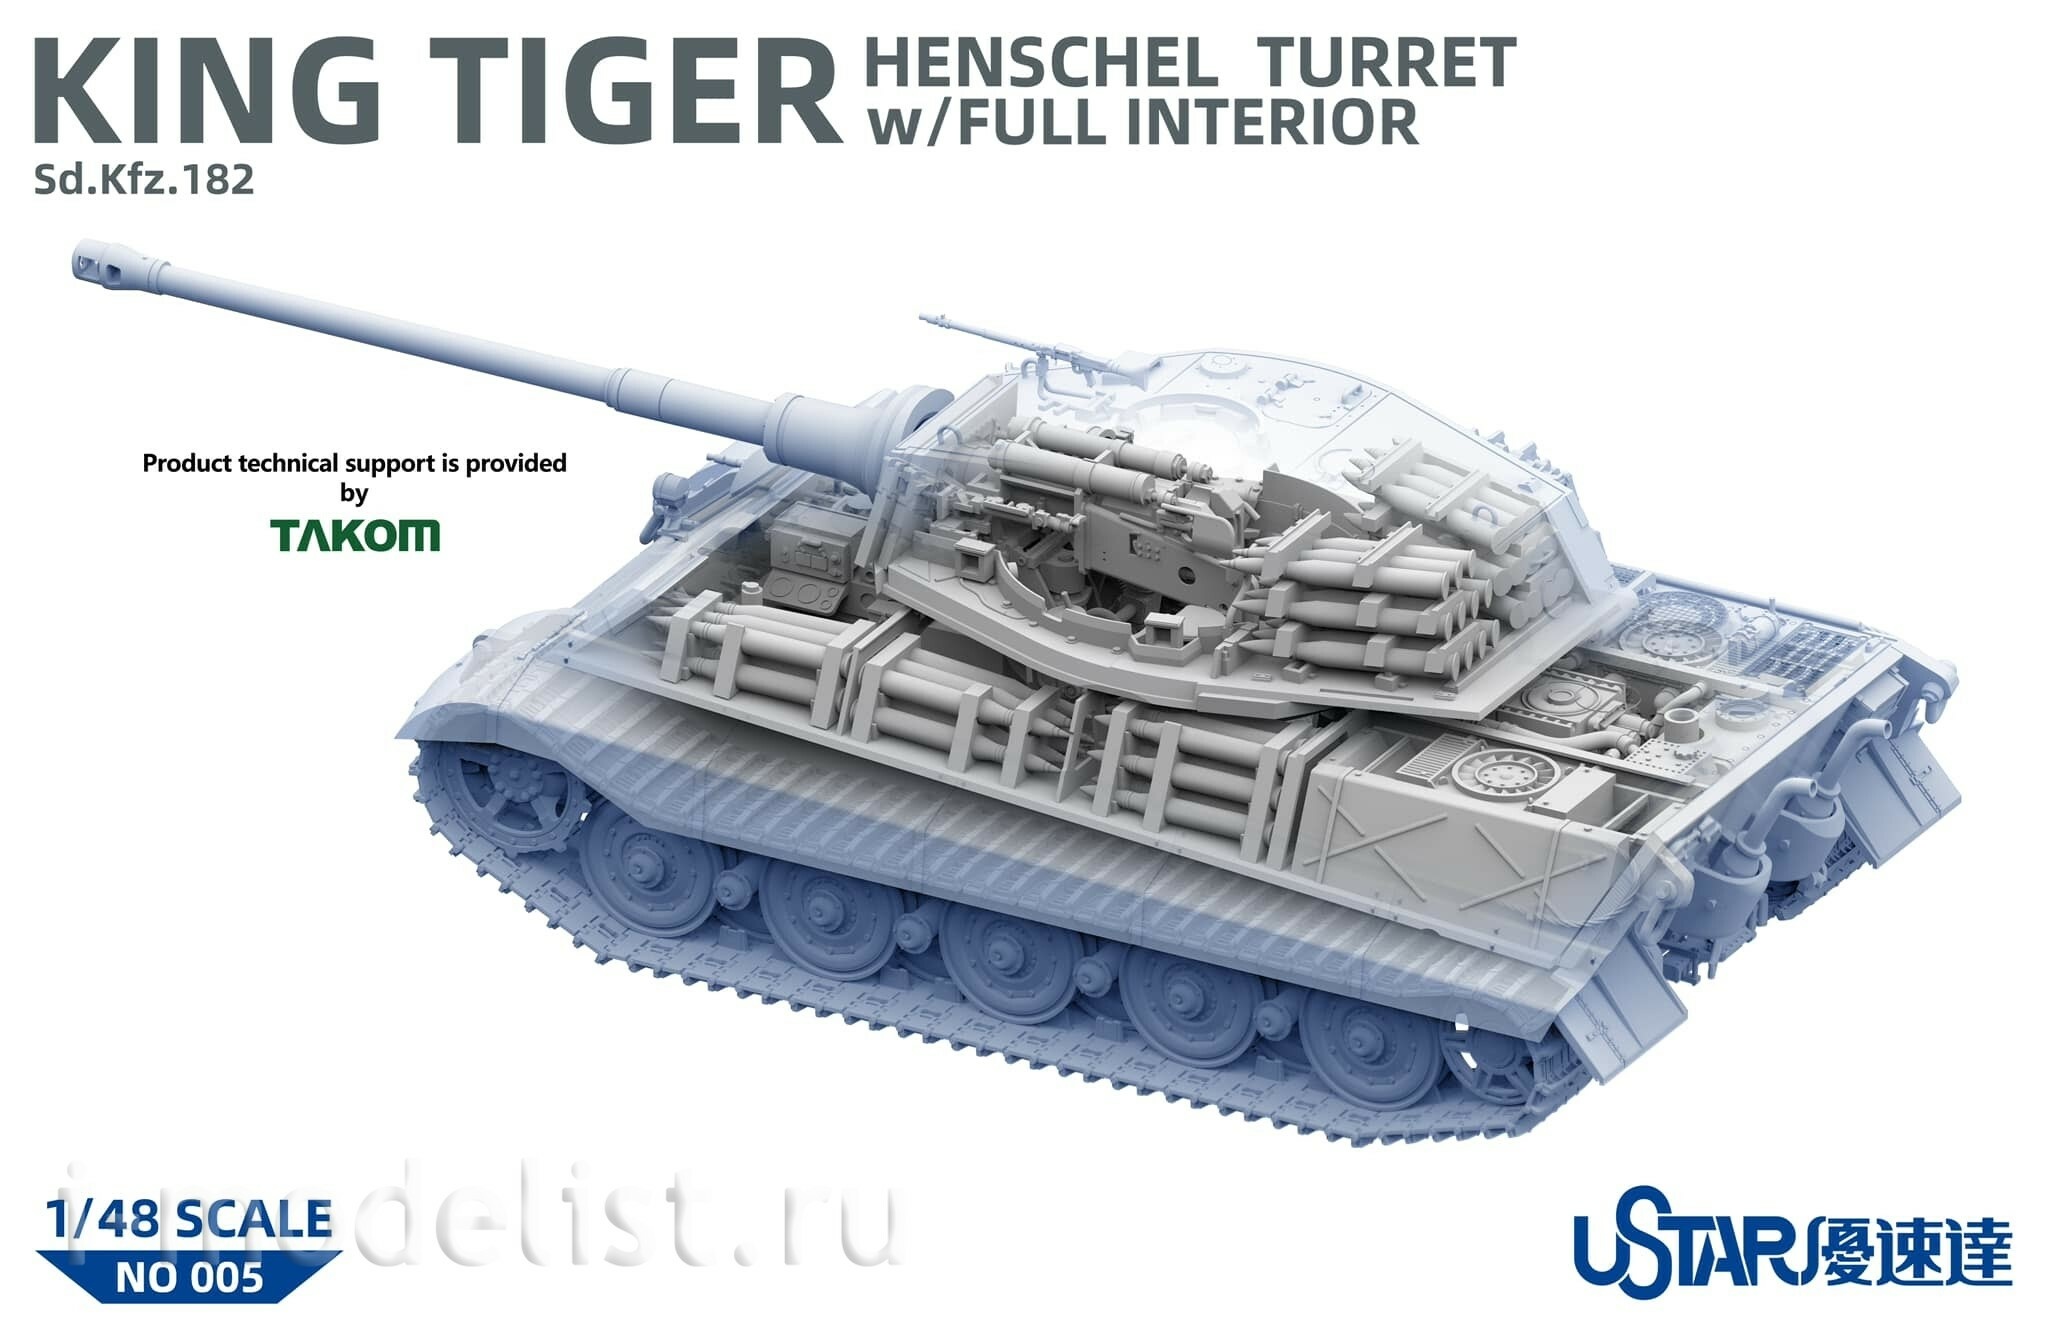 005 UStar 1/48 Танк King Tiger с башней Henschel и полным интерьером